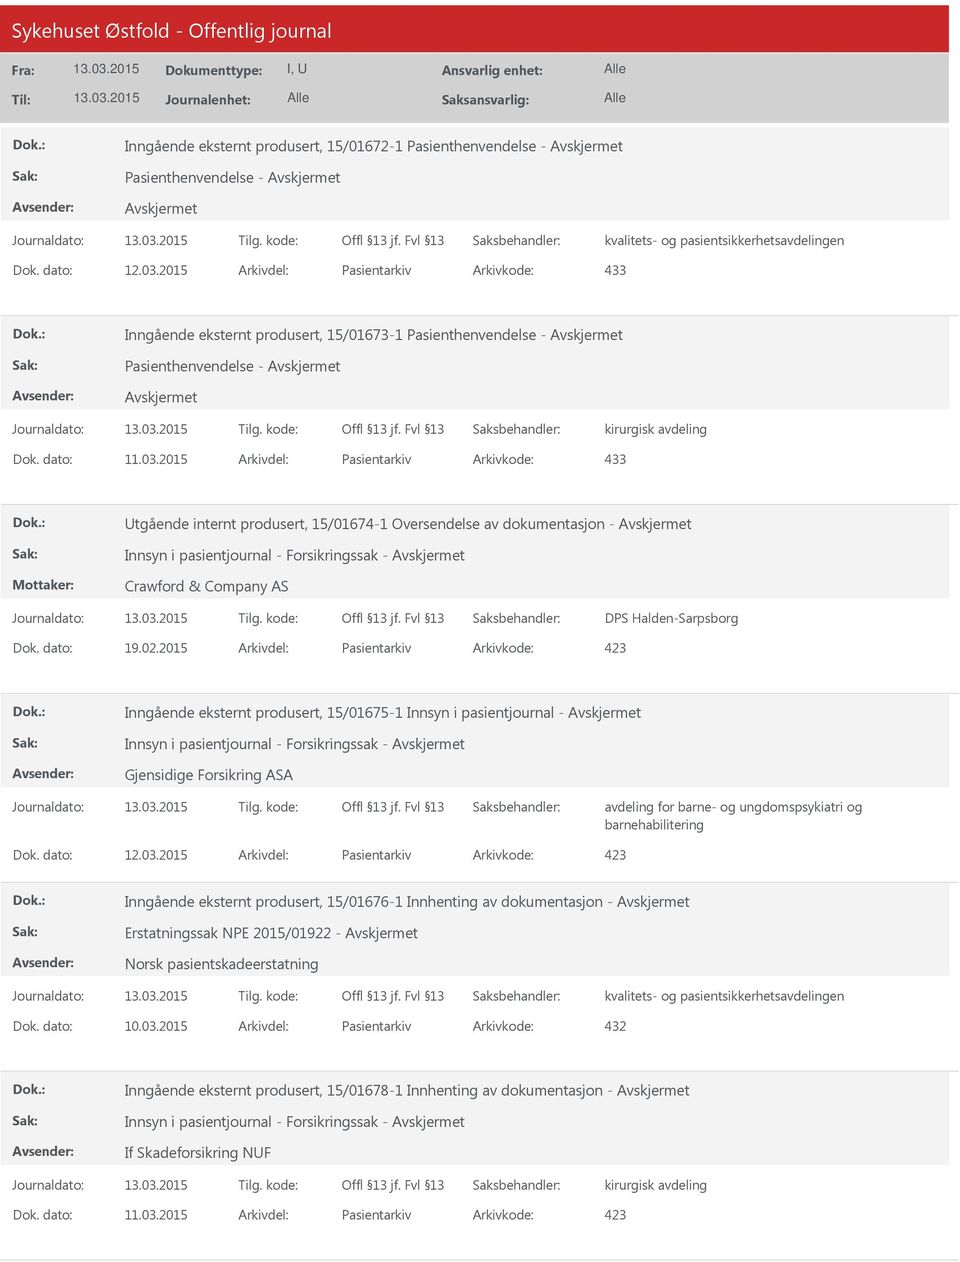 2015 Arkivdel: Pasientarkiv Arkivkode: 433 Utgående internt produsert, 15/01674-1 Oversendelse av dokumentasjon - Innsyn i pasientjournal - Forsikringssak - Crawford & Company AS DPS Halden-Sarpsborg